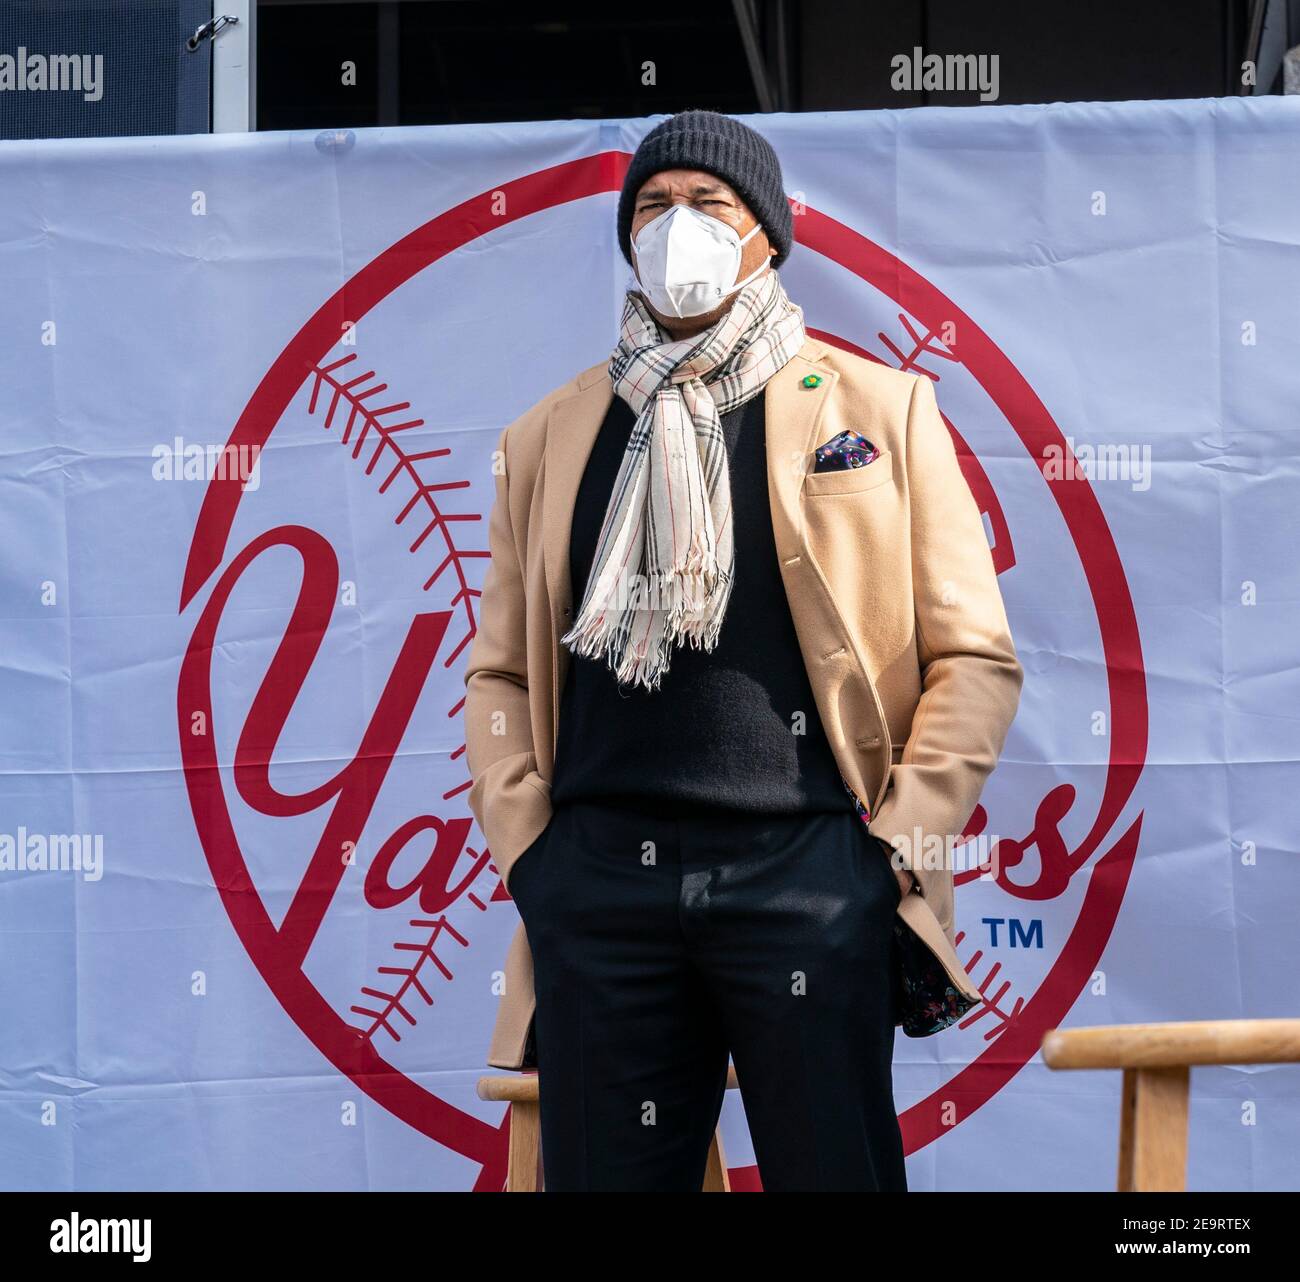 New York, NY - 5 février 2021 : Mariano Rivera assiste à l'ouverture du site de vaccination de masse au Yankee Stadium avec le logo de l'équipe de baseball des Yankees sur fond de toile de fond Banque D'Images